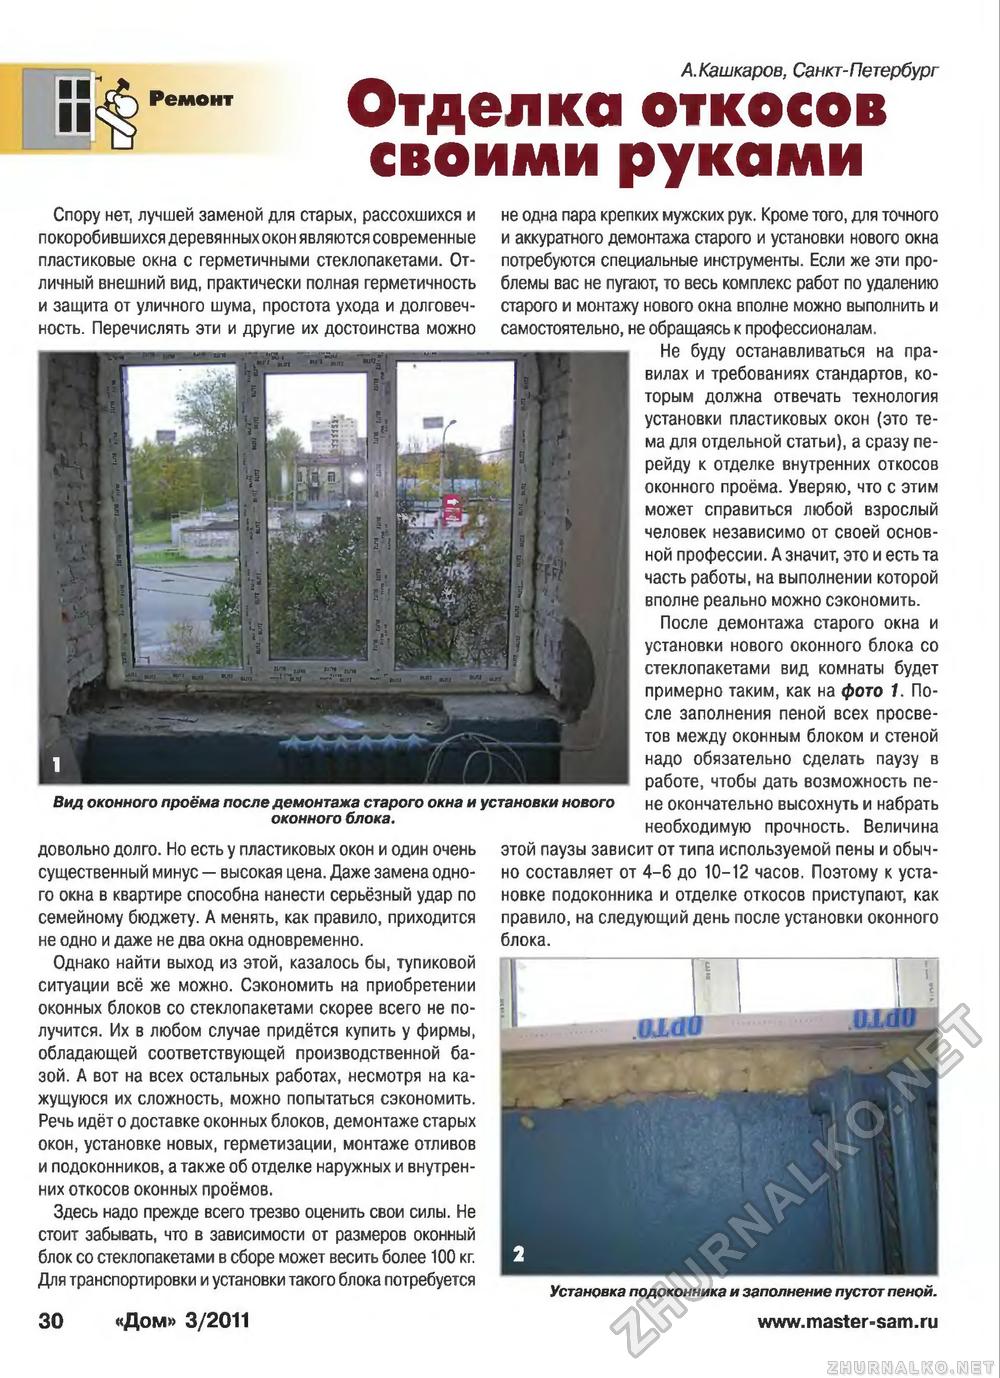 Дом 2011-03, страница 30